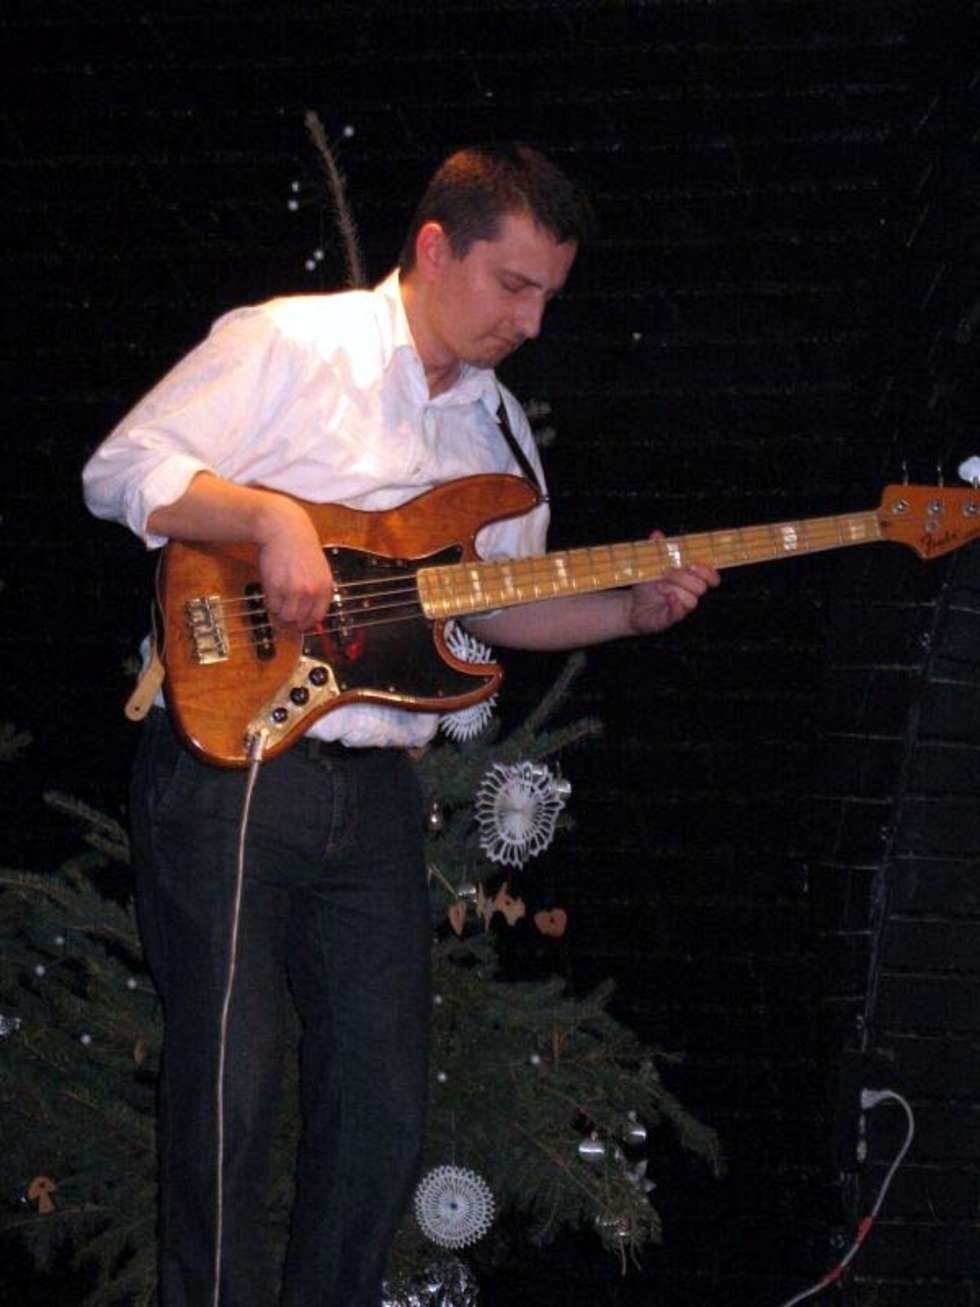  Lukasz Gorczyca na gitarze basowej.